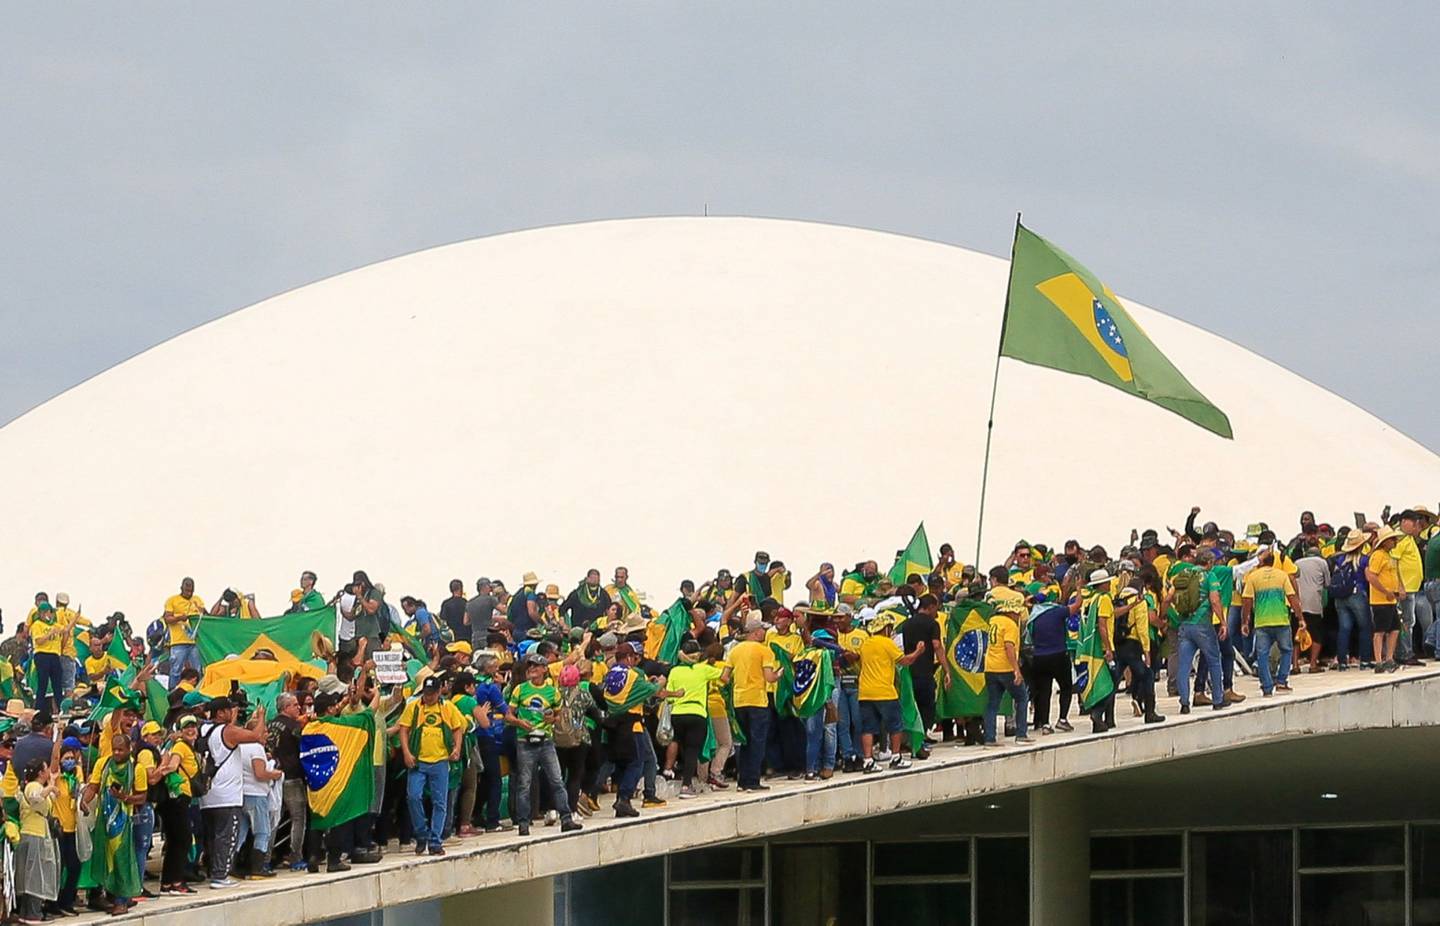 La confianza de los inversionistas será afectada ante los temores de los disturbios sociales e inestabilidad política en Brasil.